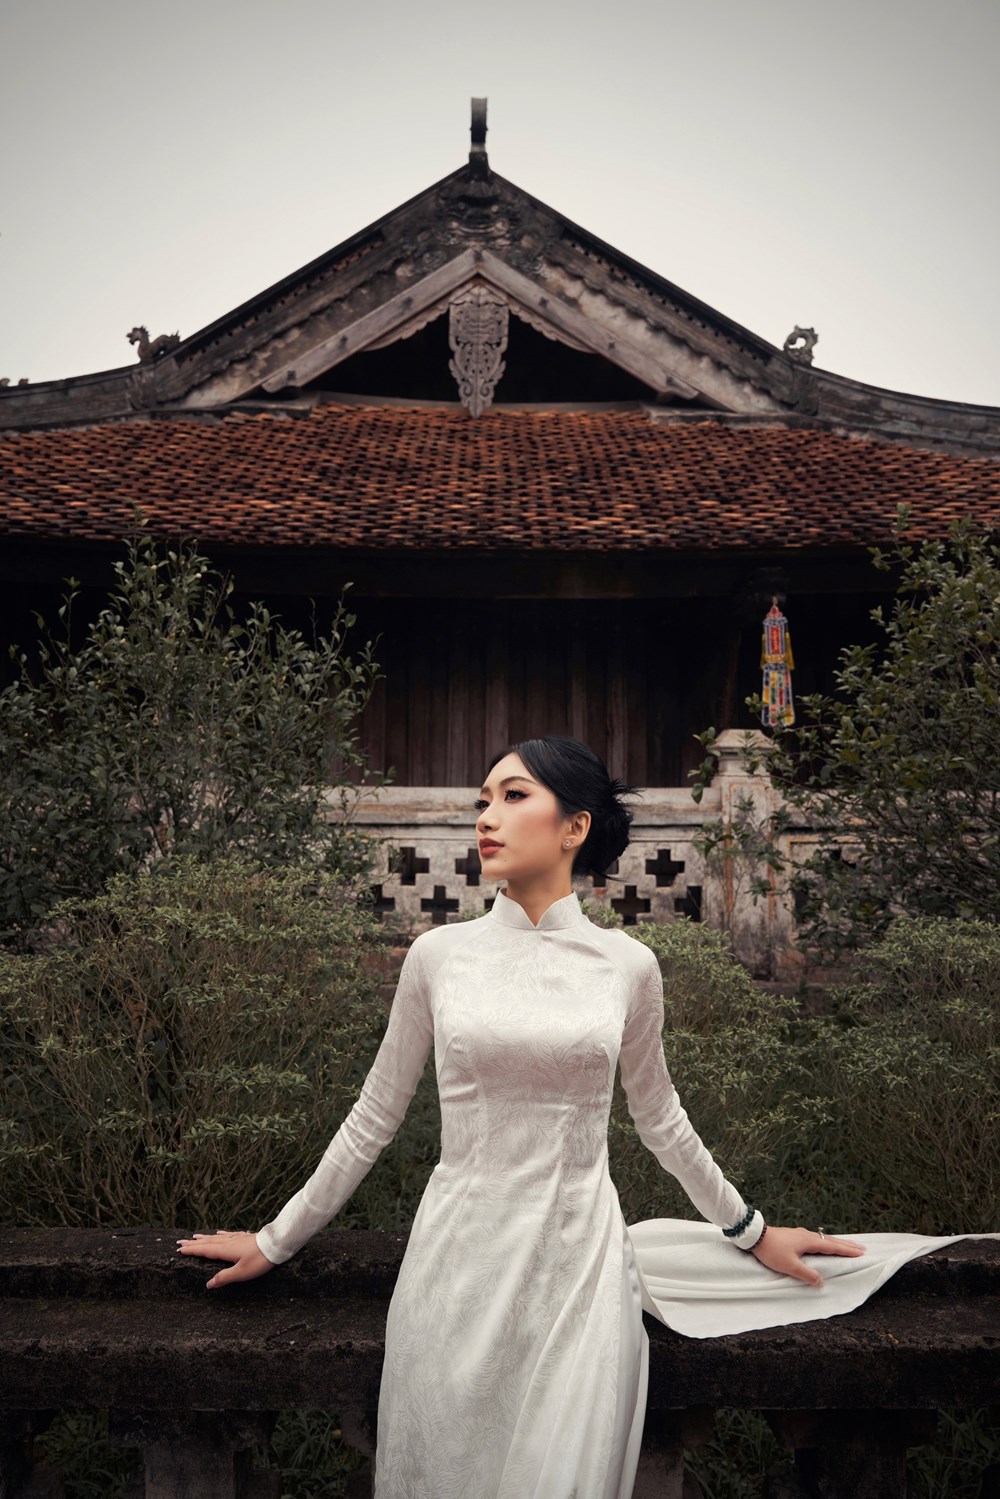 “Đại sứ Sinh viên du lịch năm 2024” đẹp nền nã trong bộ áo dài trắng tinh khôi ở chùa Keo - ảnh 13